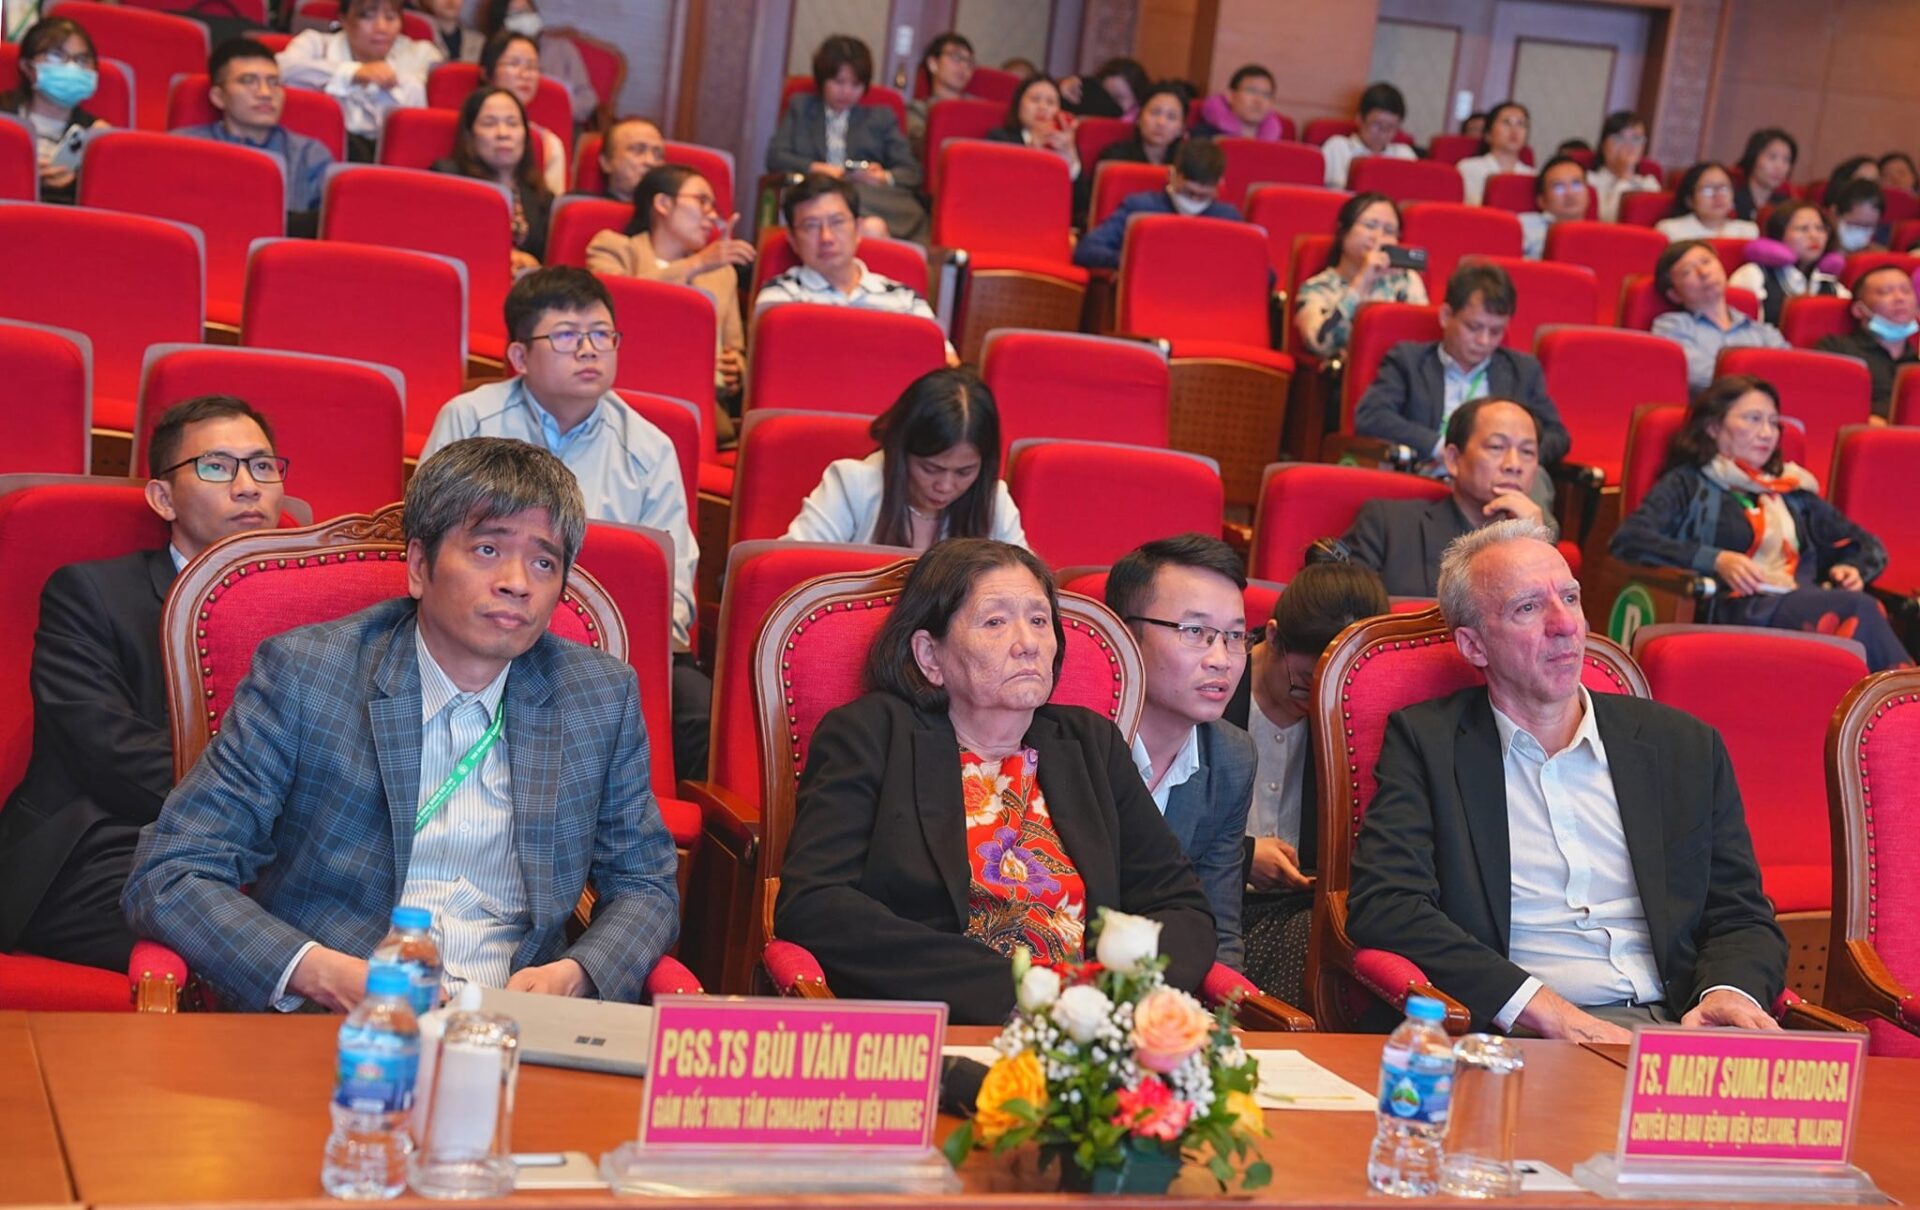 hội nghị khoa học quản lý đau Việt Nam - Hội nghiên cứu Đau Việt Nam 2